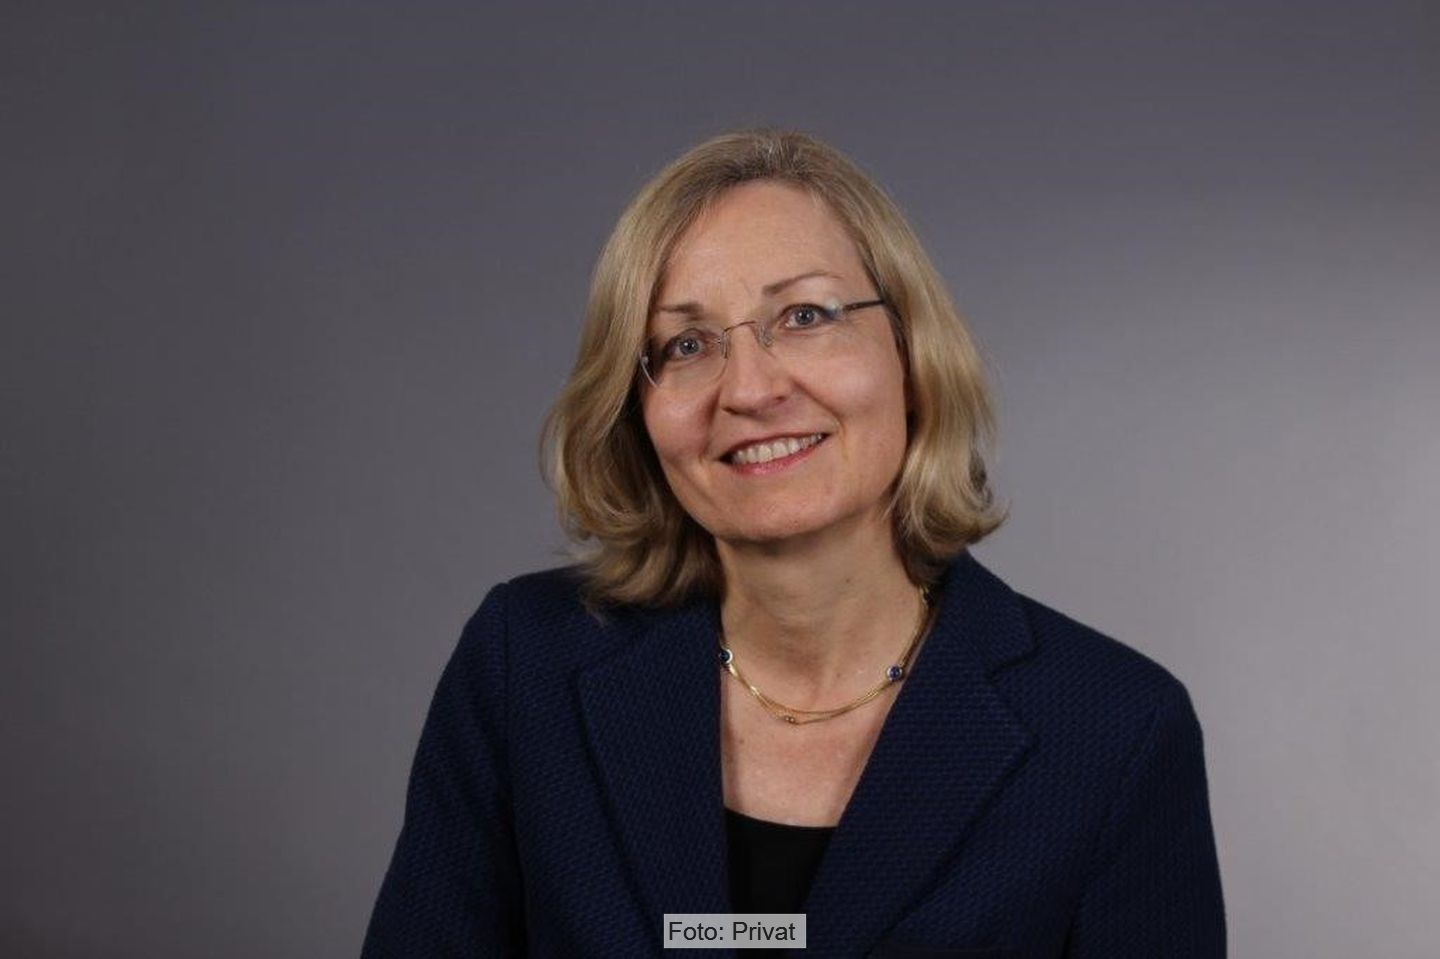 Susanne Lottermoser, Leiterin der Abteilung "Transformation" im BMUV"